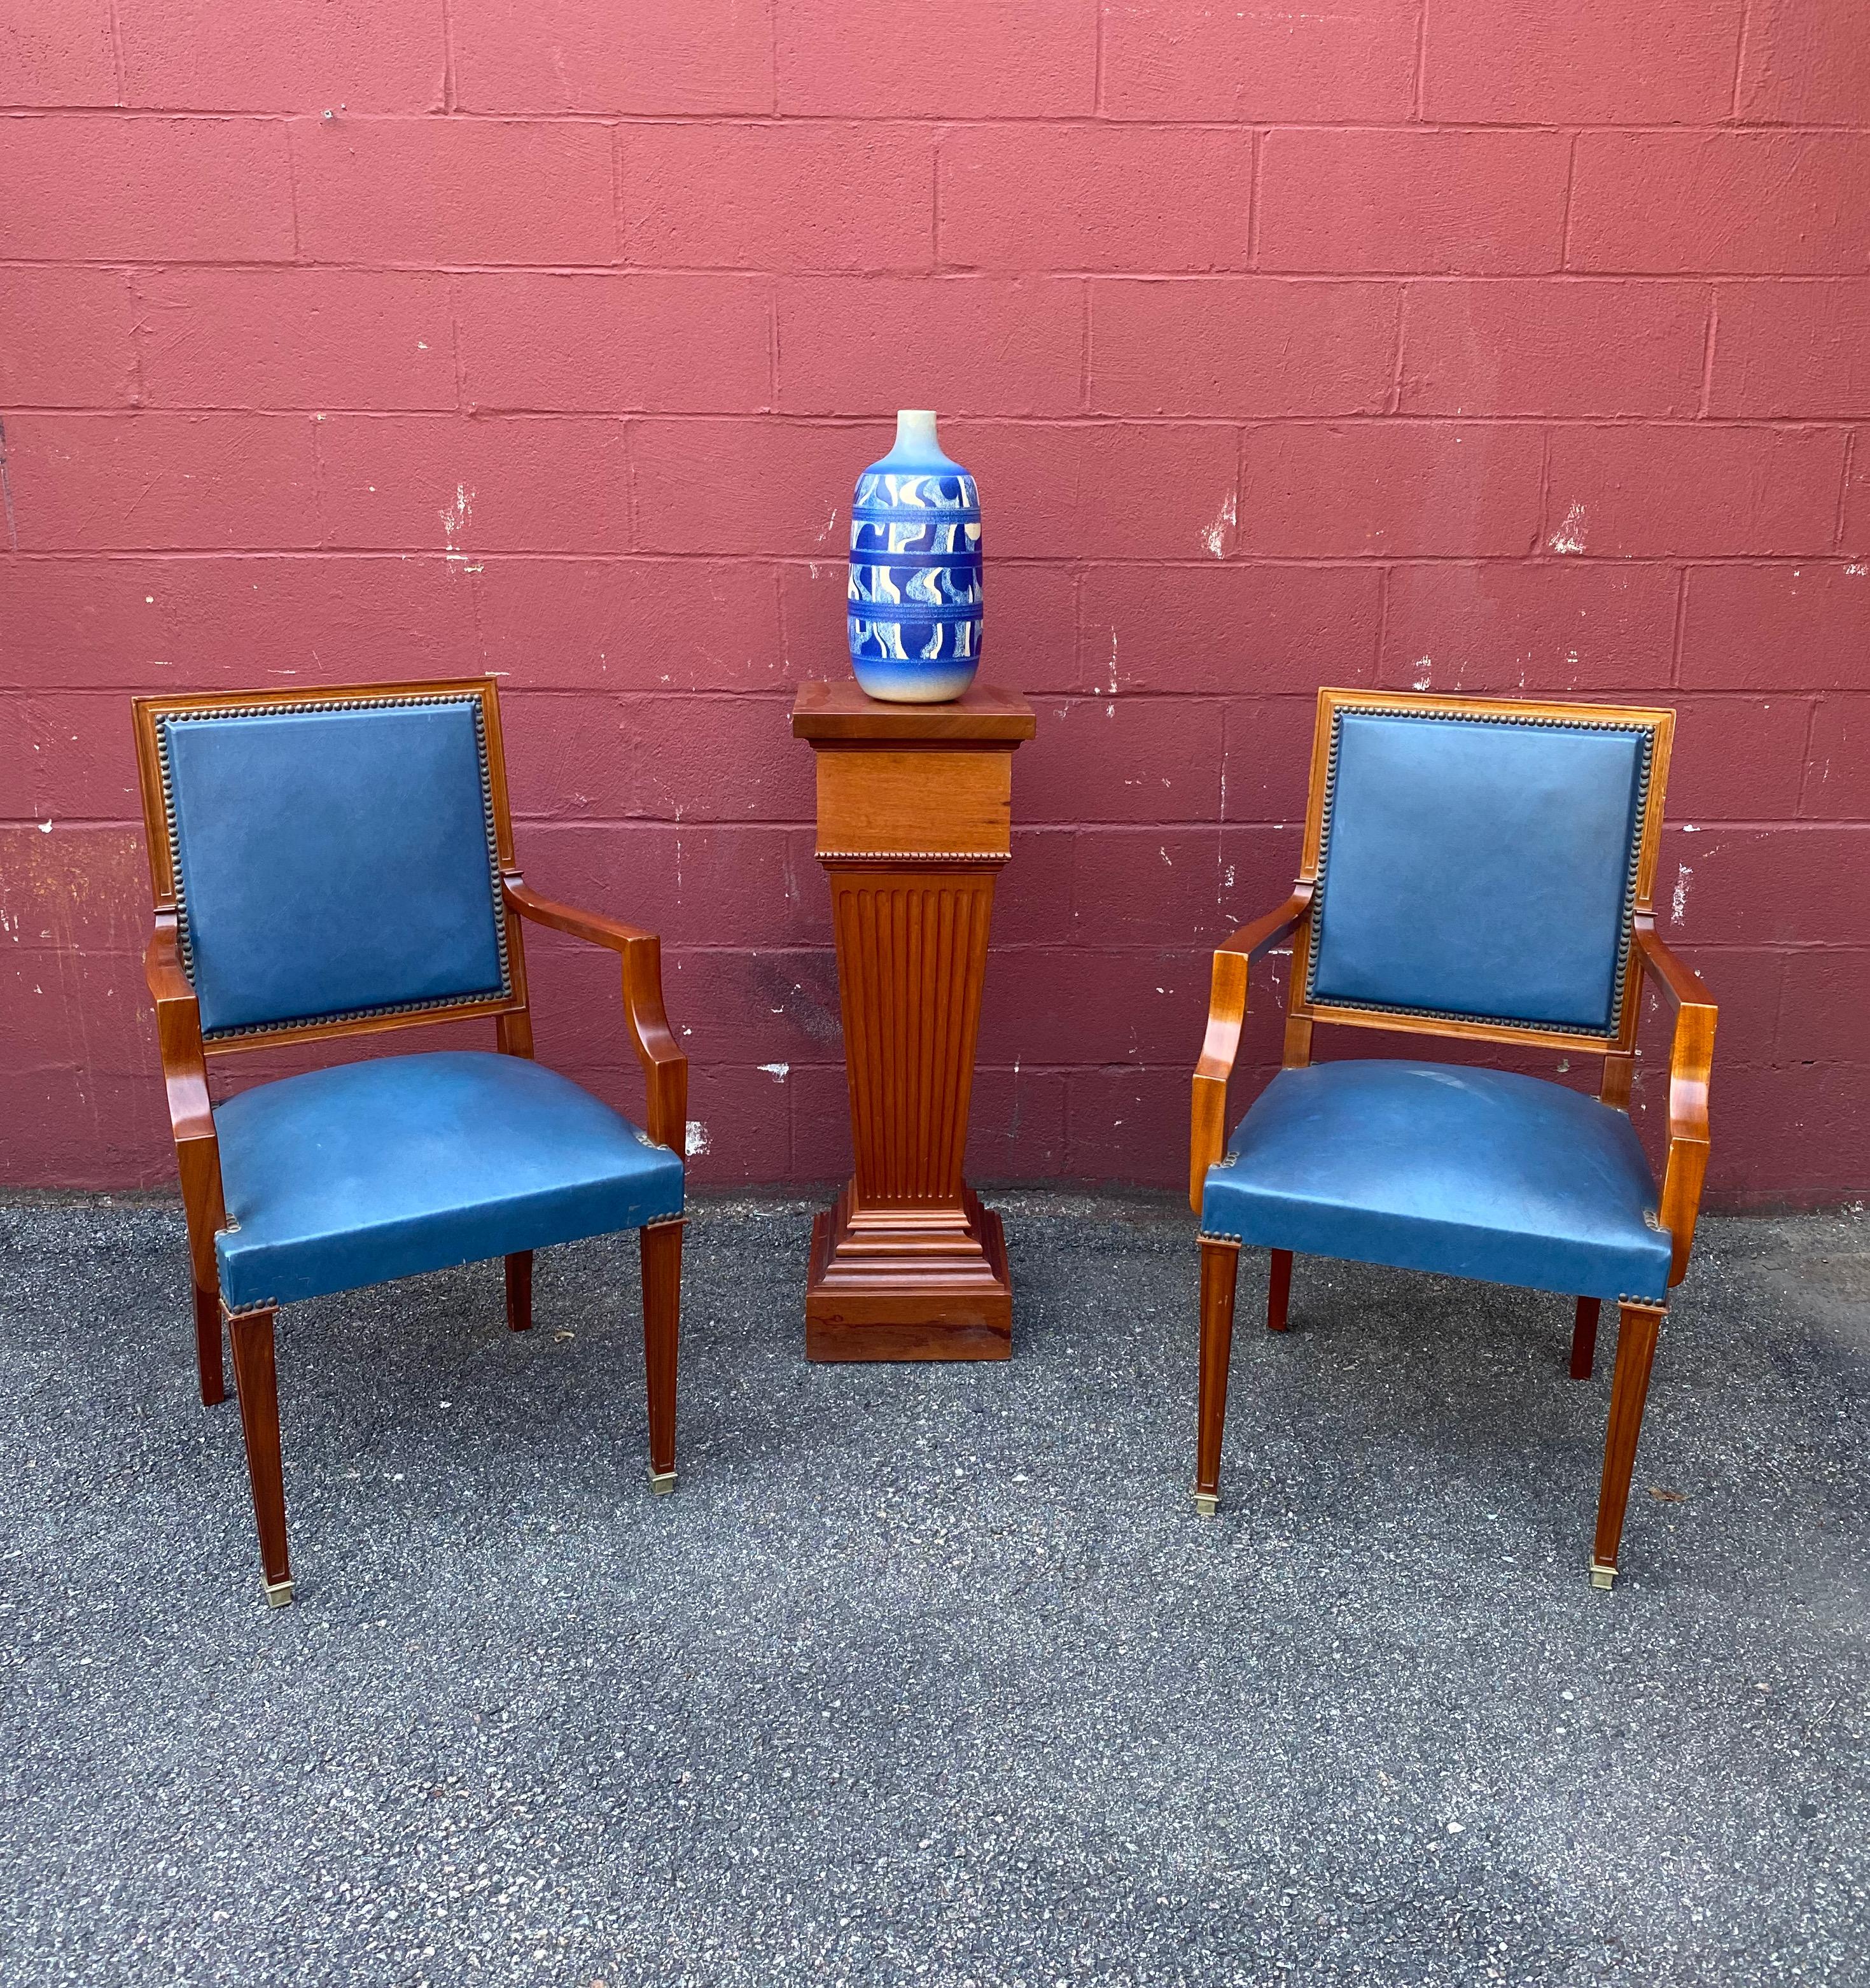 Une superbe paire de fauteuils français des années 1940 en cuir bleu. Découvrez le luxe français classique avec cette paire de fauteuils intemporels des années 1940. Les cadres élégants en bois d'acajou offrent une présence élégante avec leur